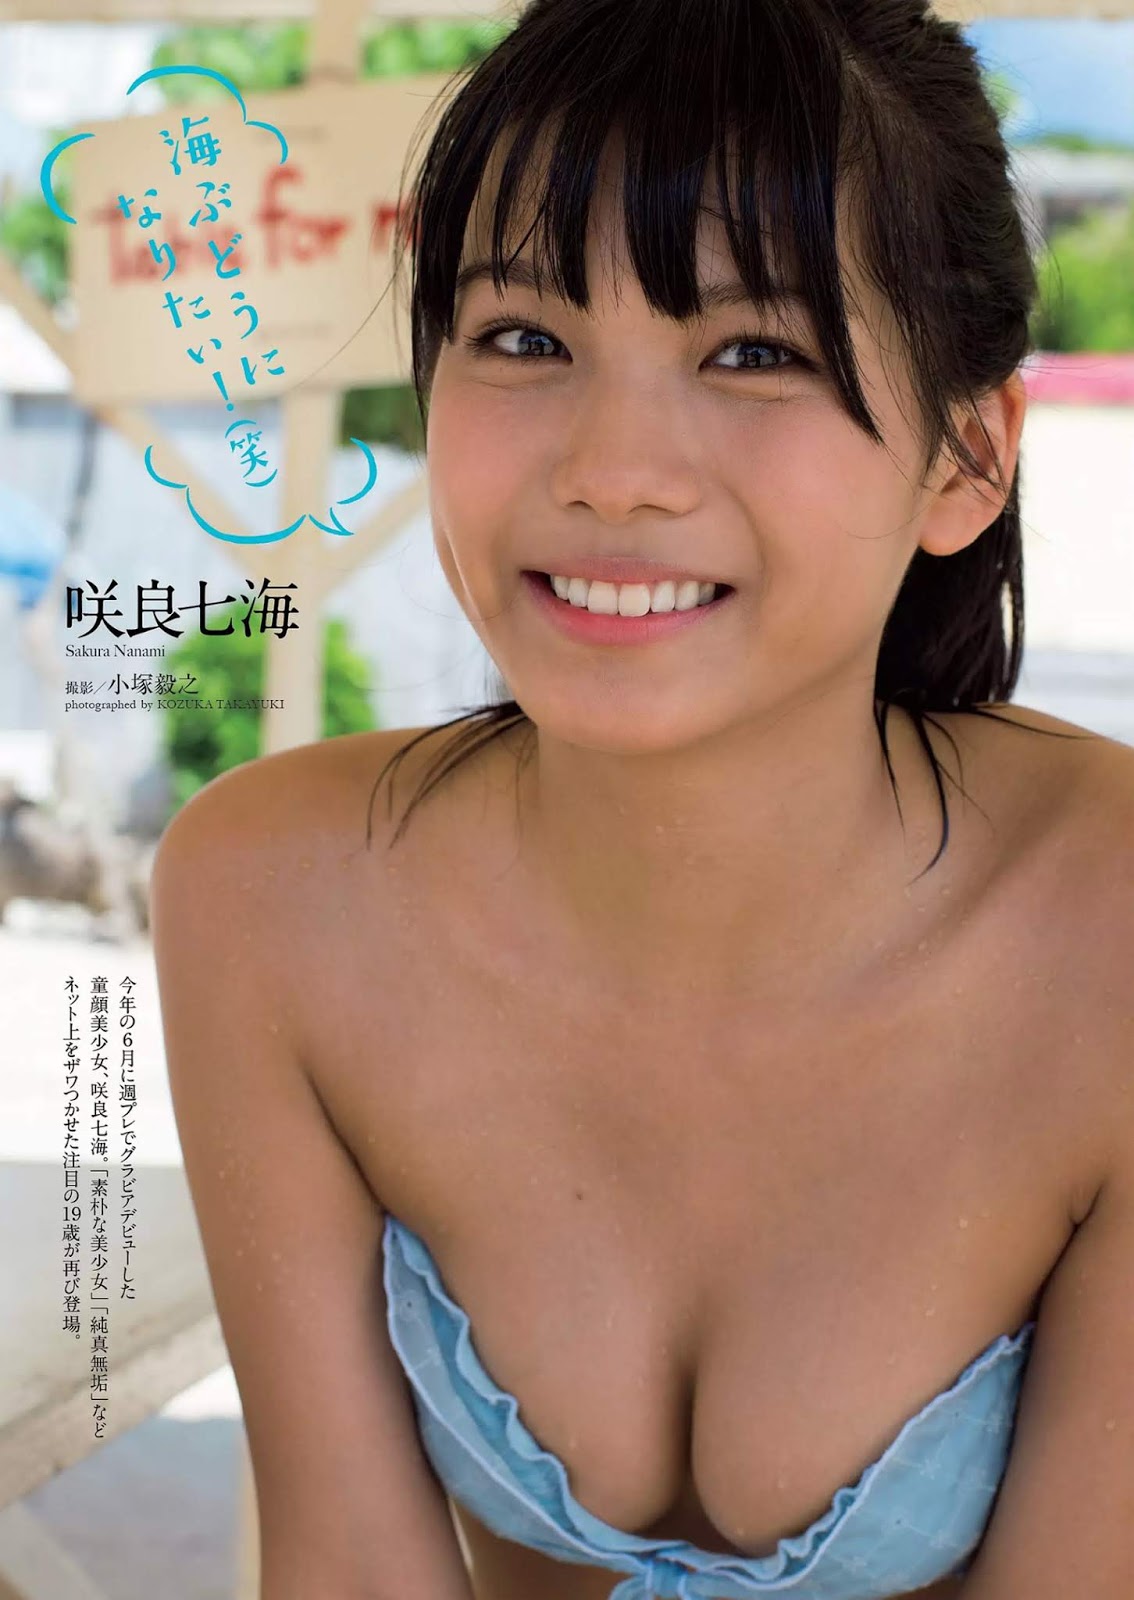 Nanami Sakura 咲良七海, Weekly Playboy 2018 No.50 (週刊プレイボーイ 2018年50号)